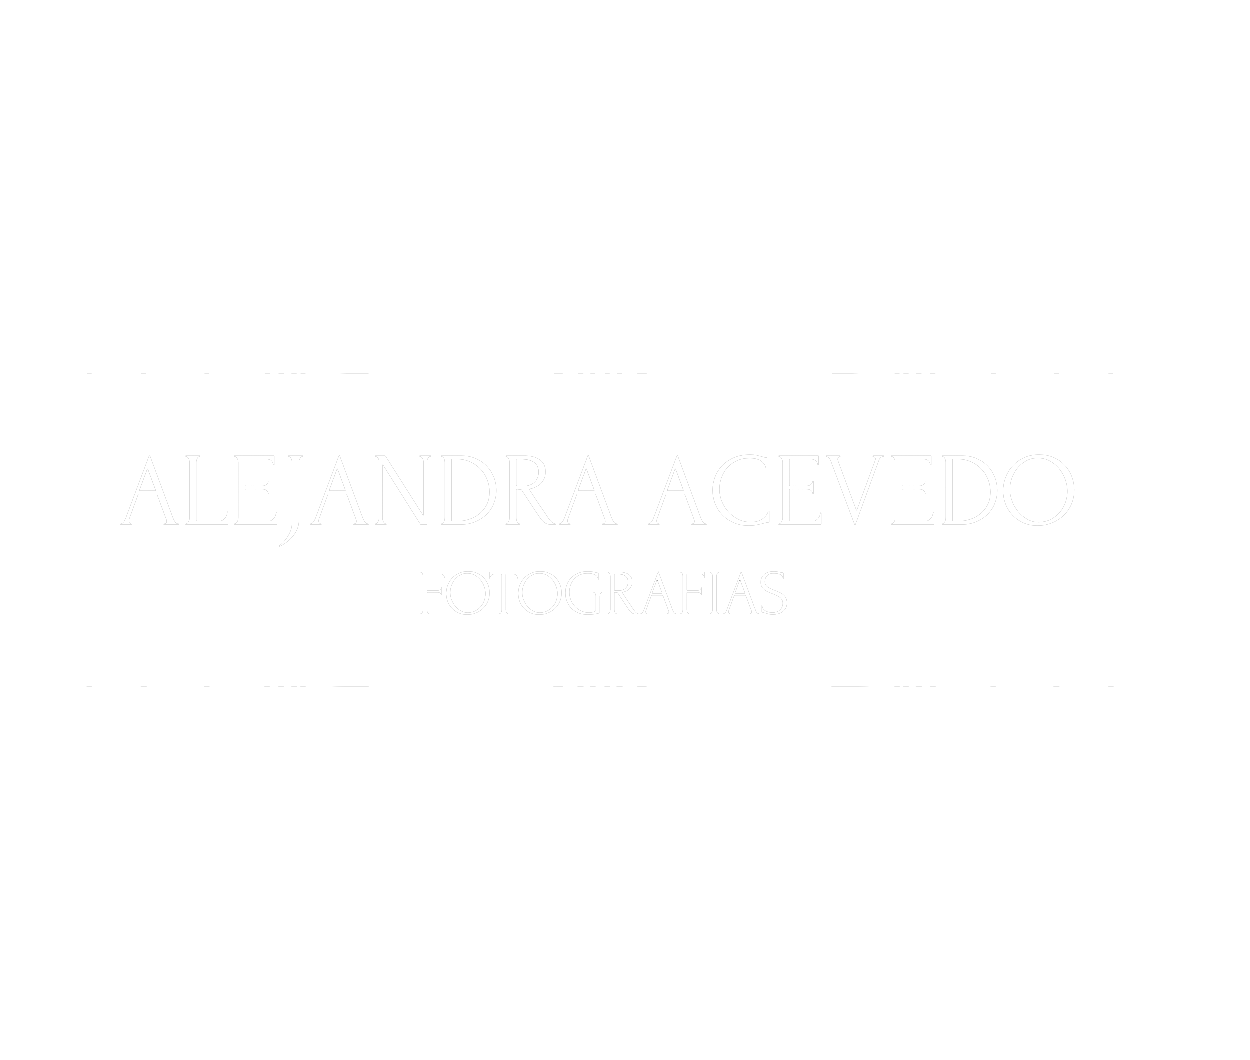 Alejandra Acevedo